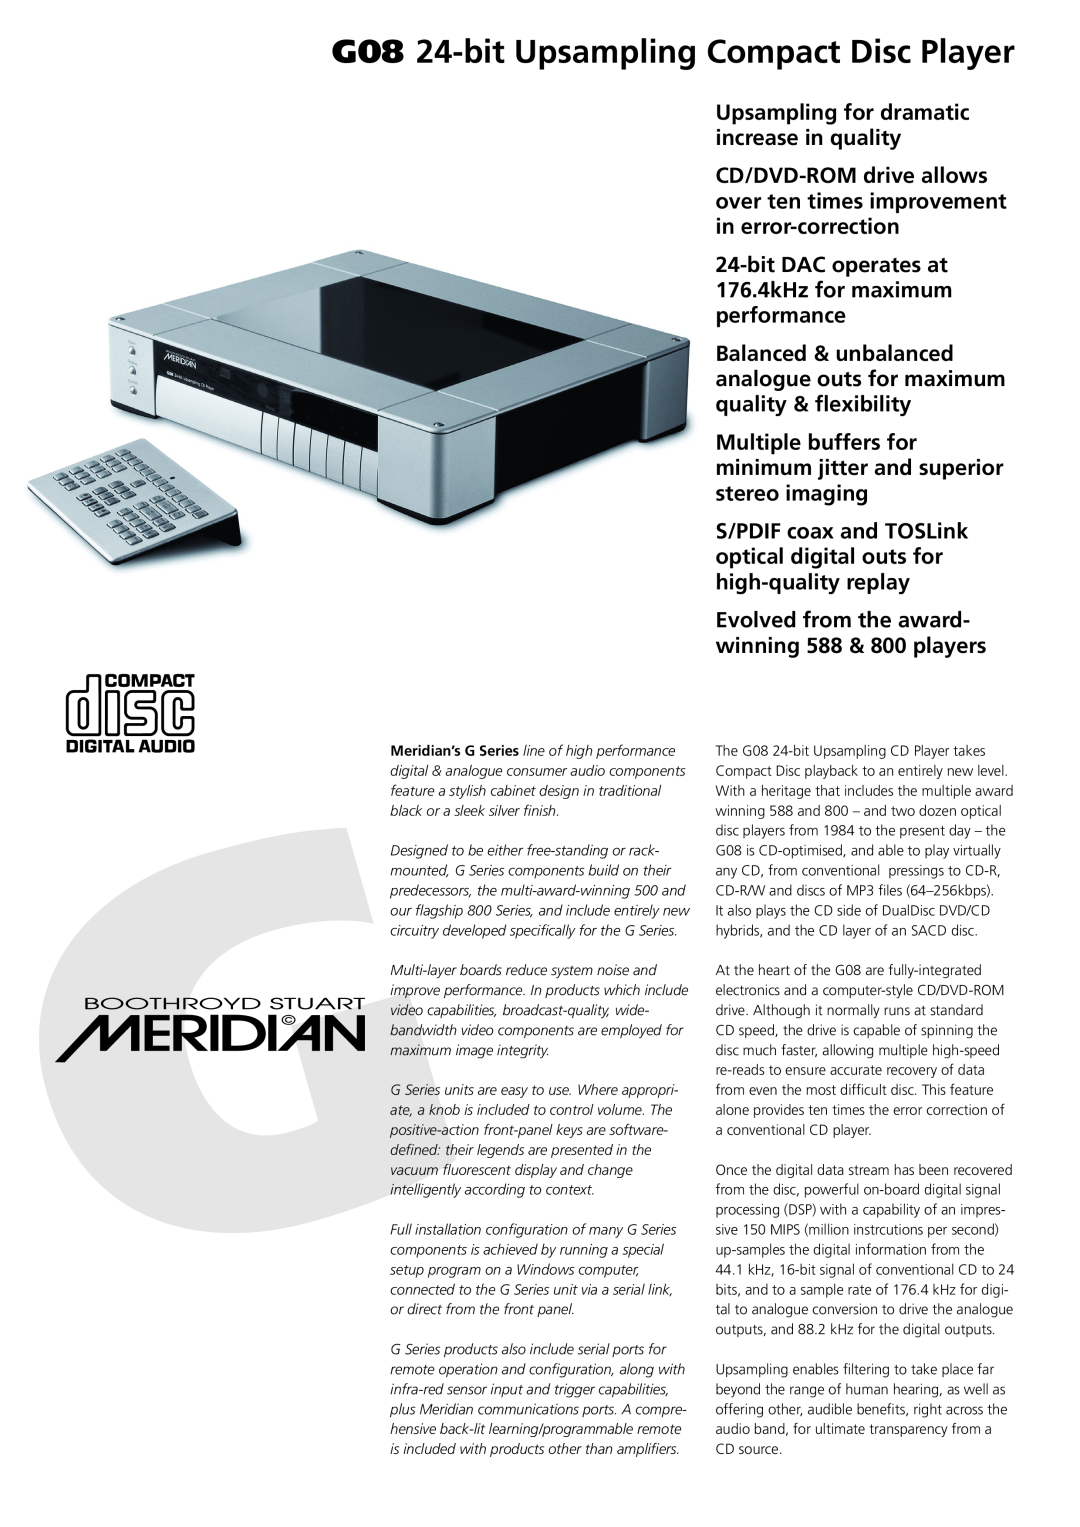 Meridian Audio manual G08 24-bitUpsampling Compact Disc Player 